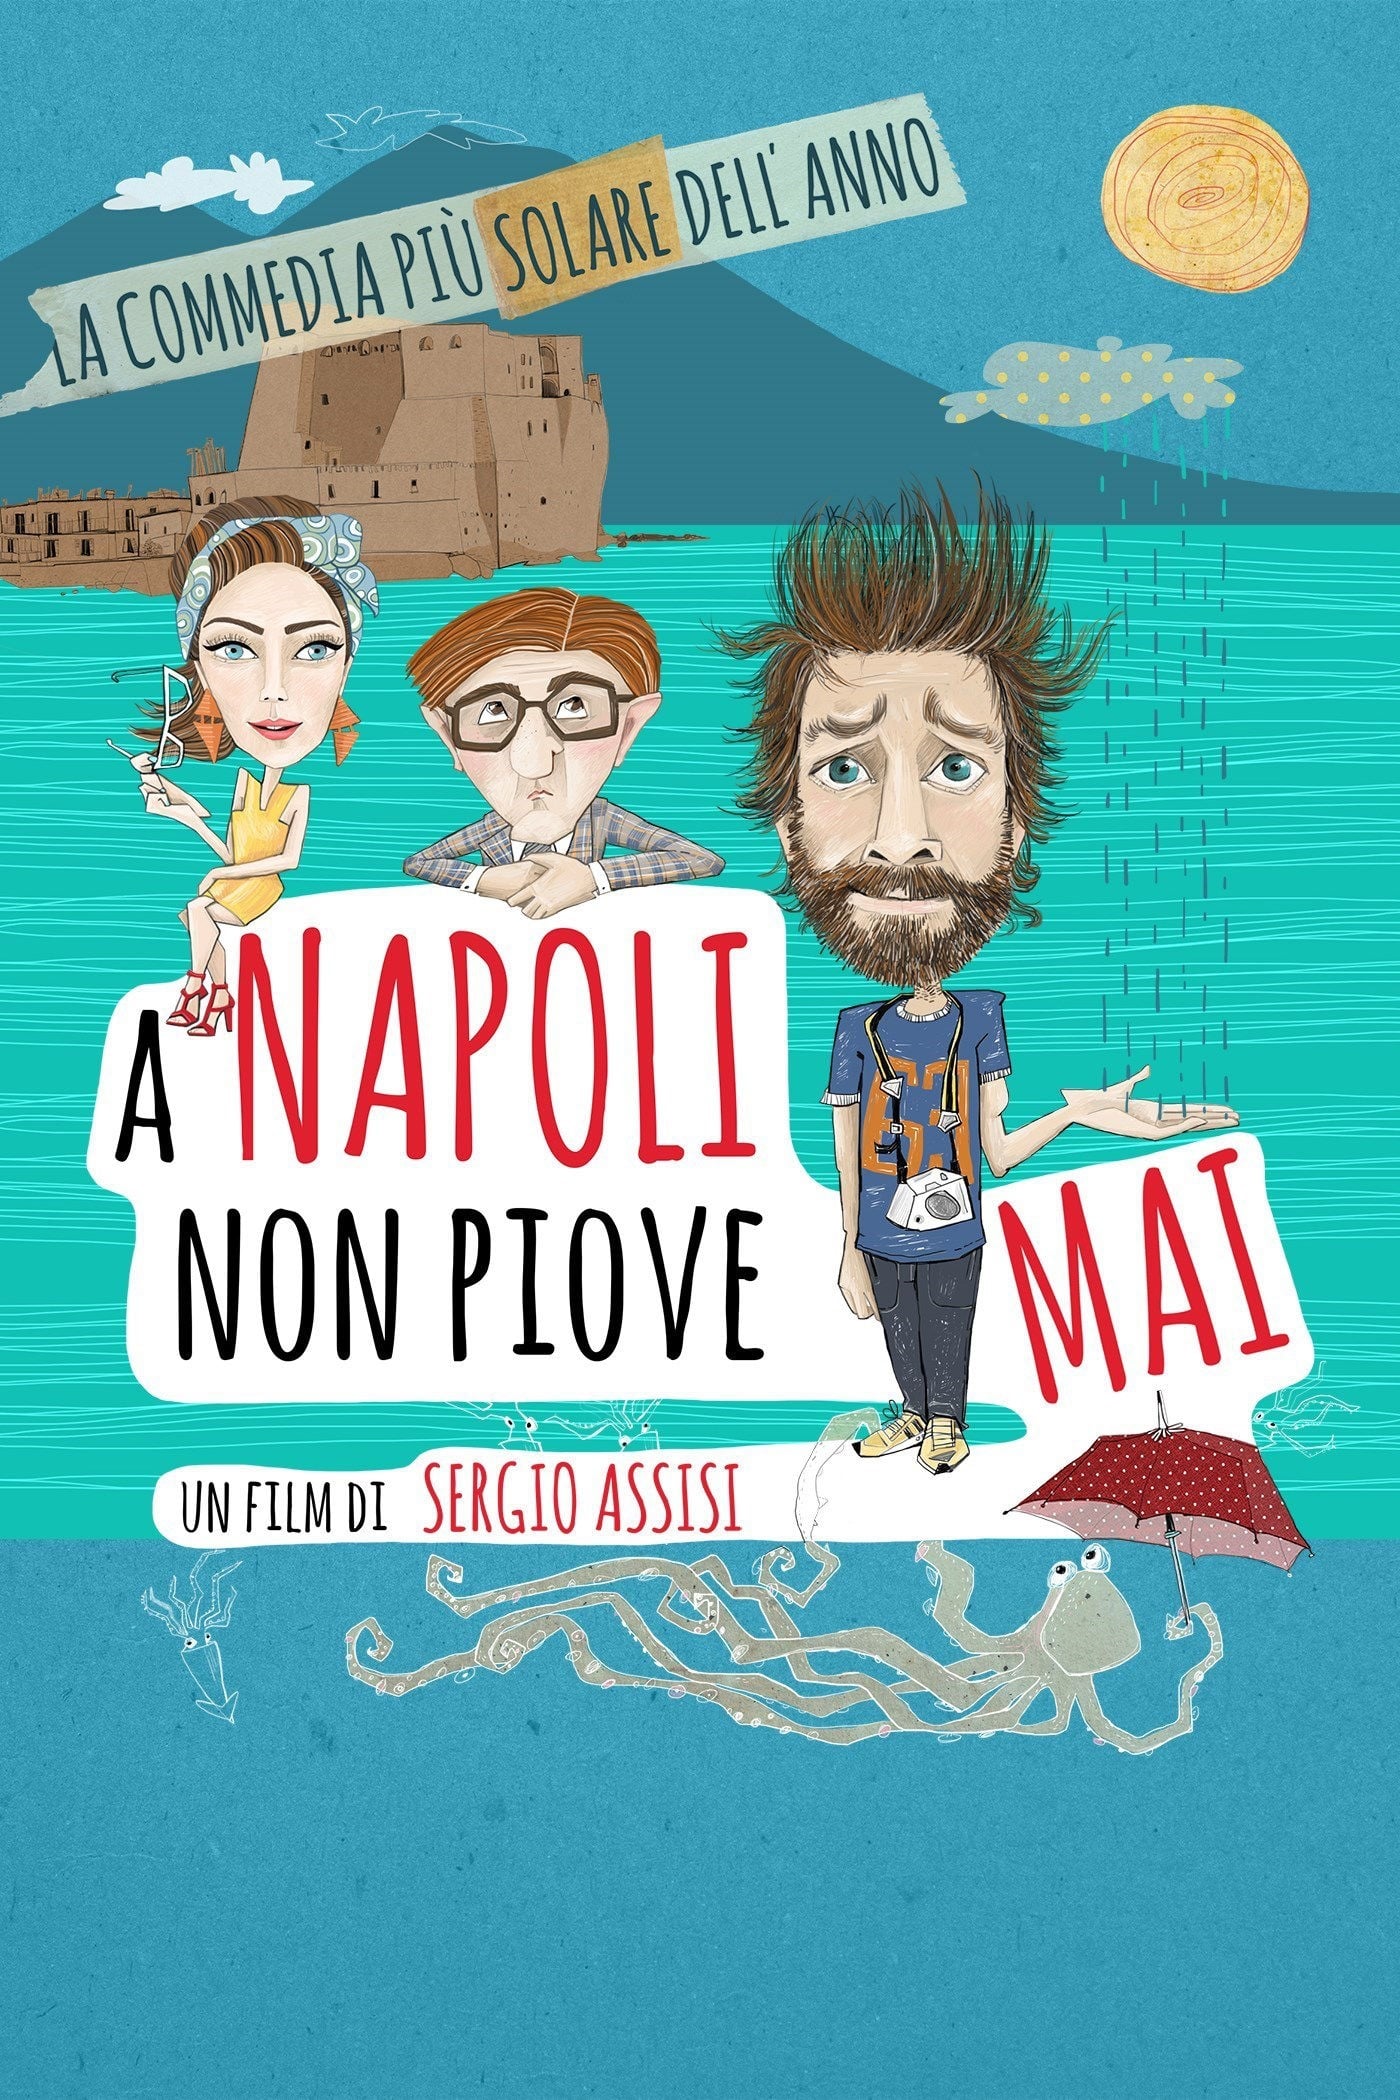 Vieni a vivere a Napoli!